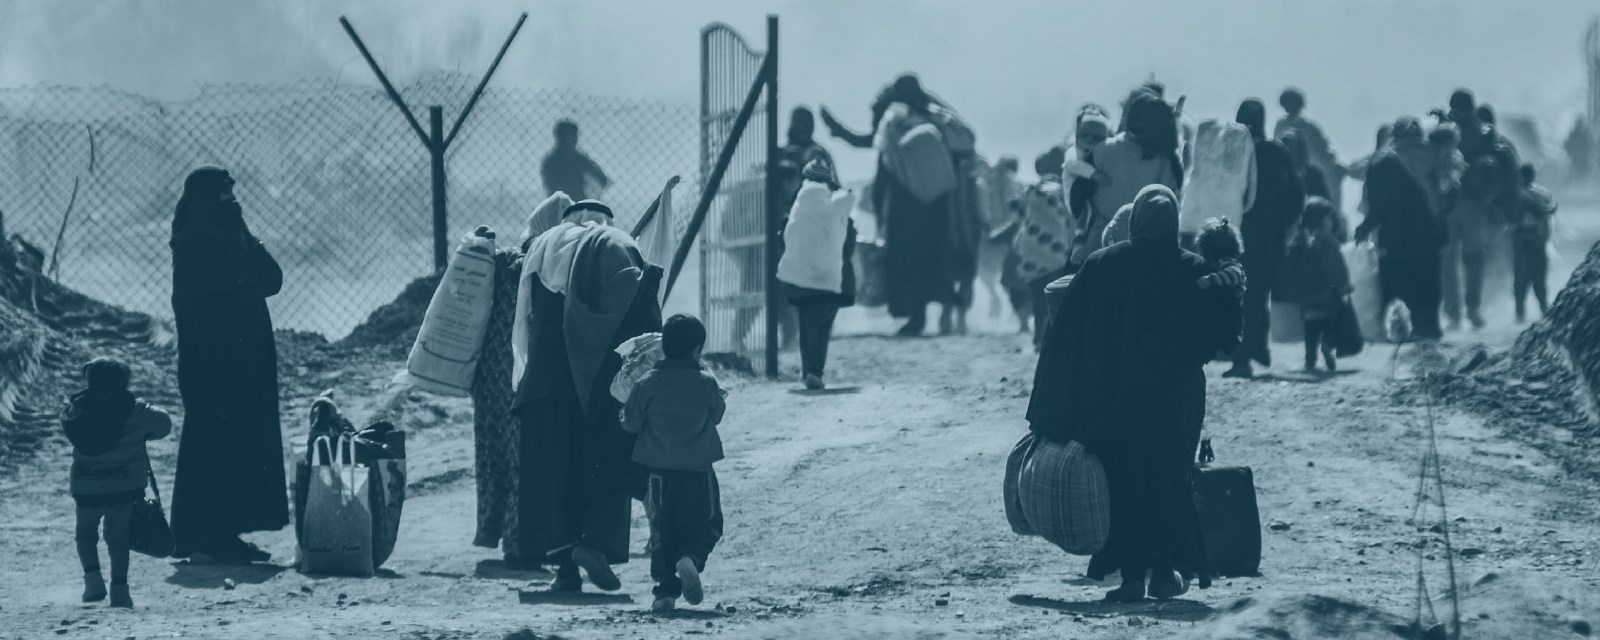 Mange kvinner og barn går langs en støvete vei mot en port